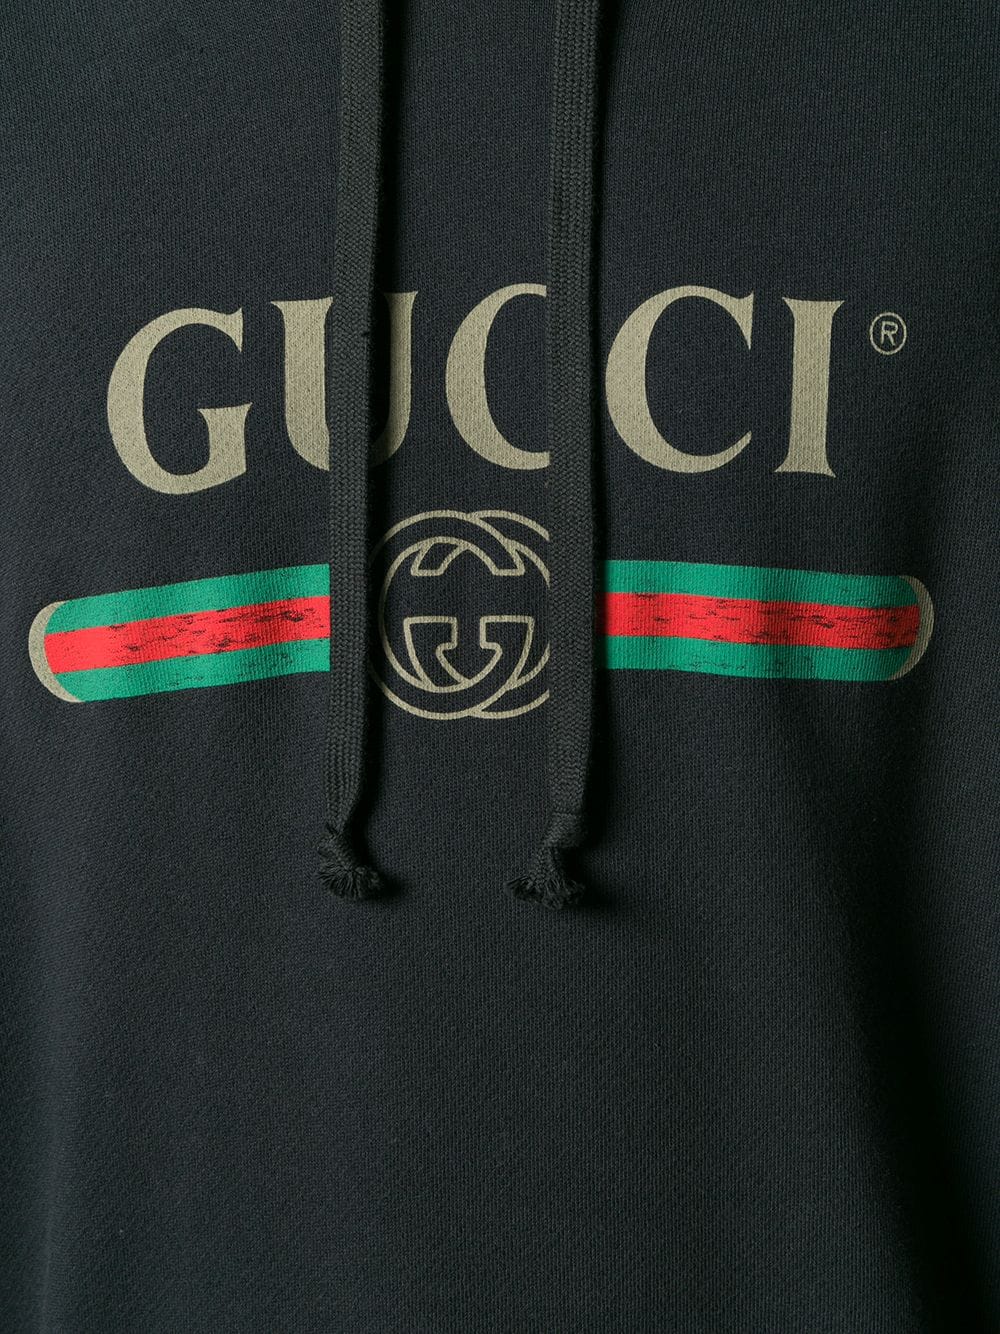 Gucci Duke Dragon Embroidered Collar Shirt - Farfetch